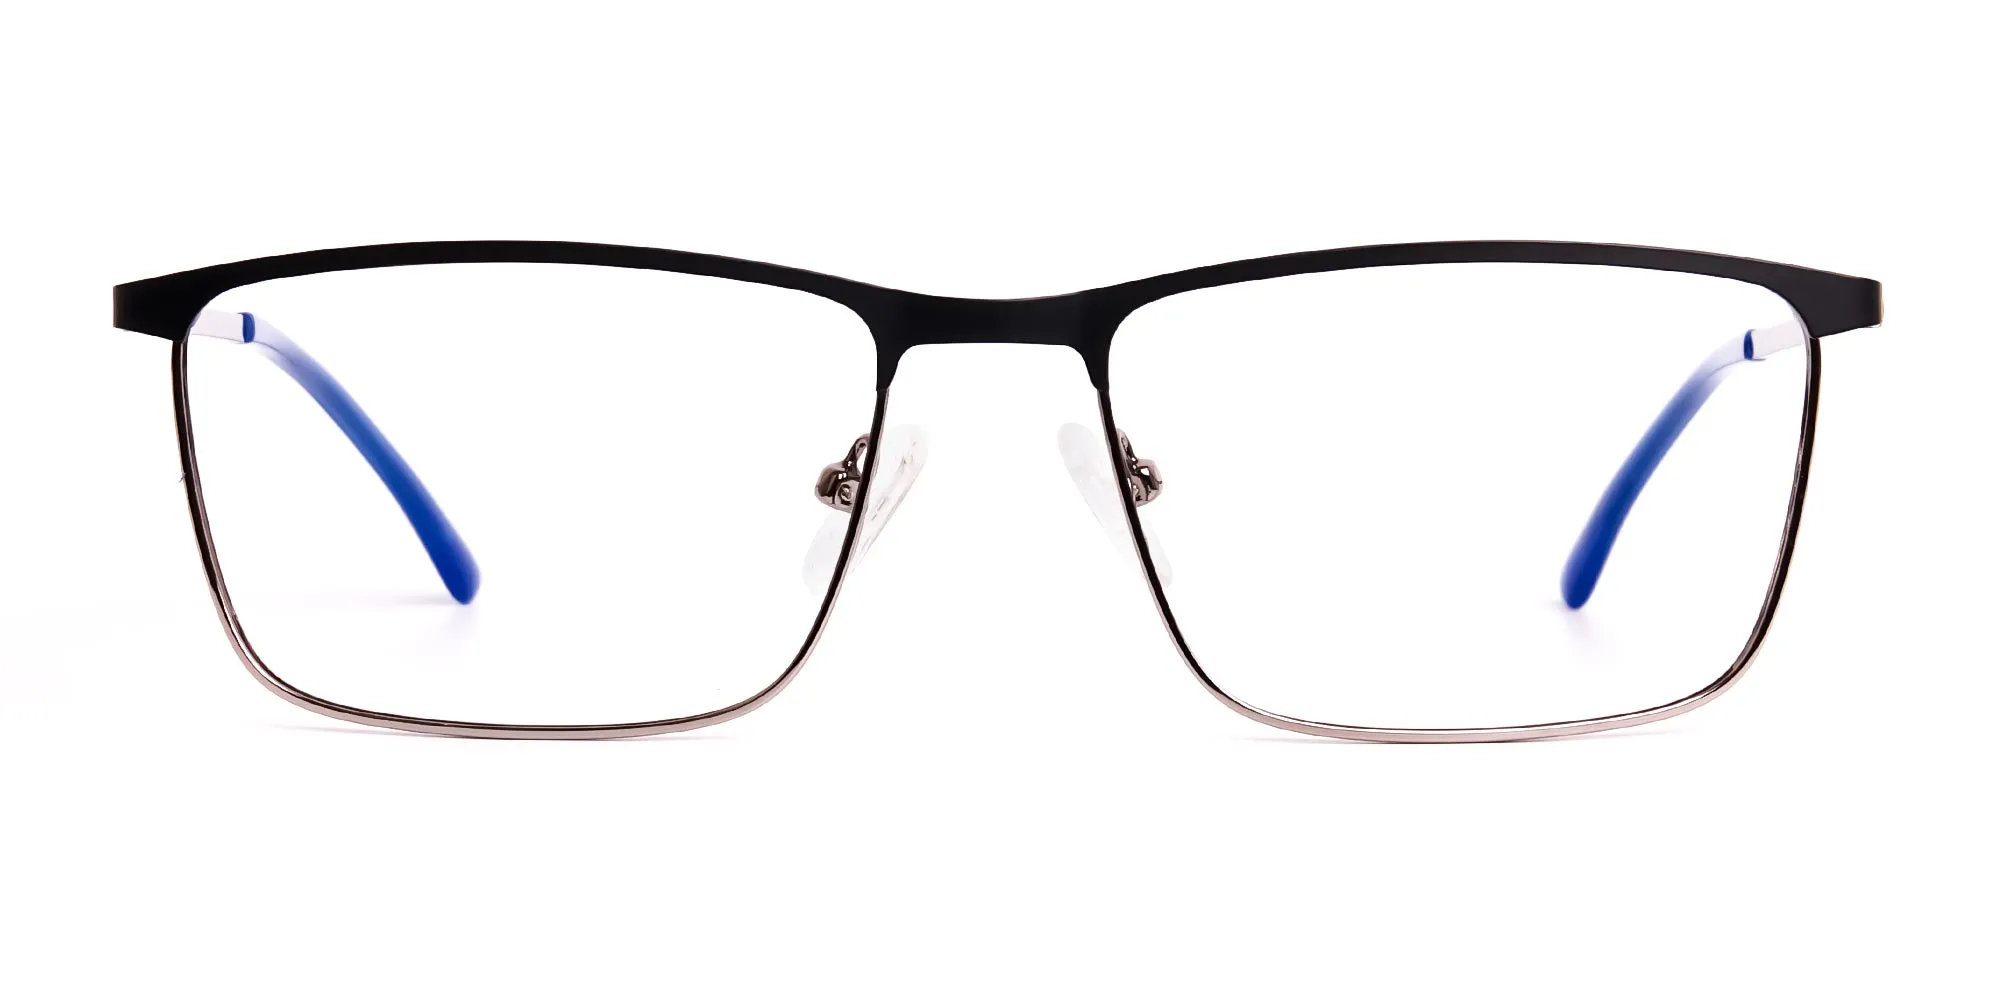 black and blue gunmetal rectangular full rim glasses frames-2